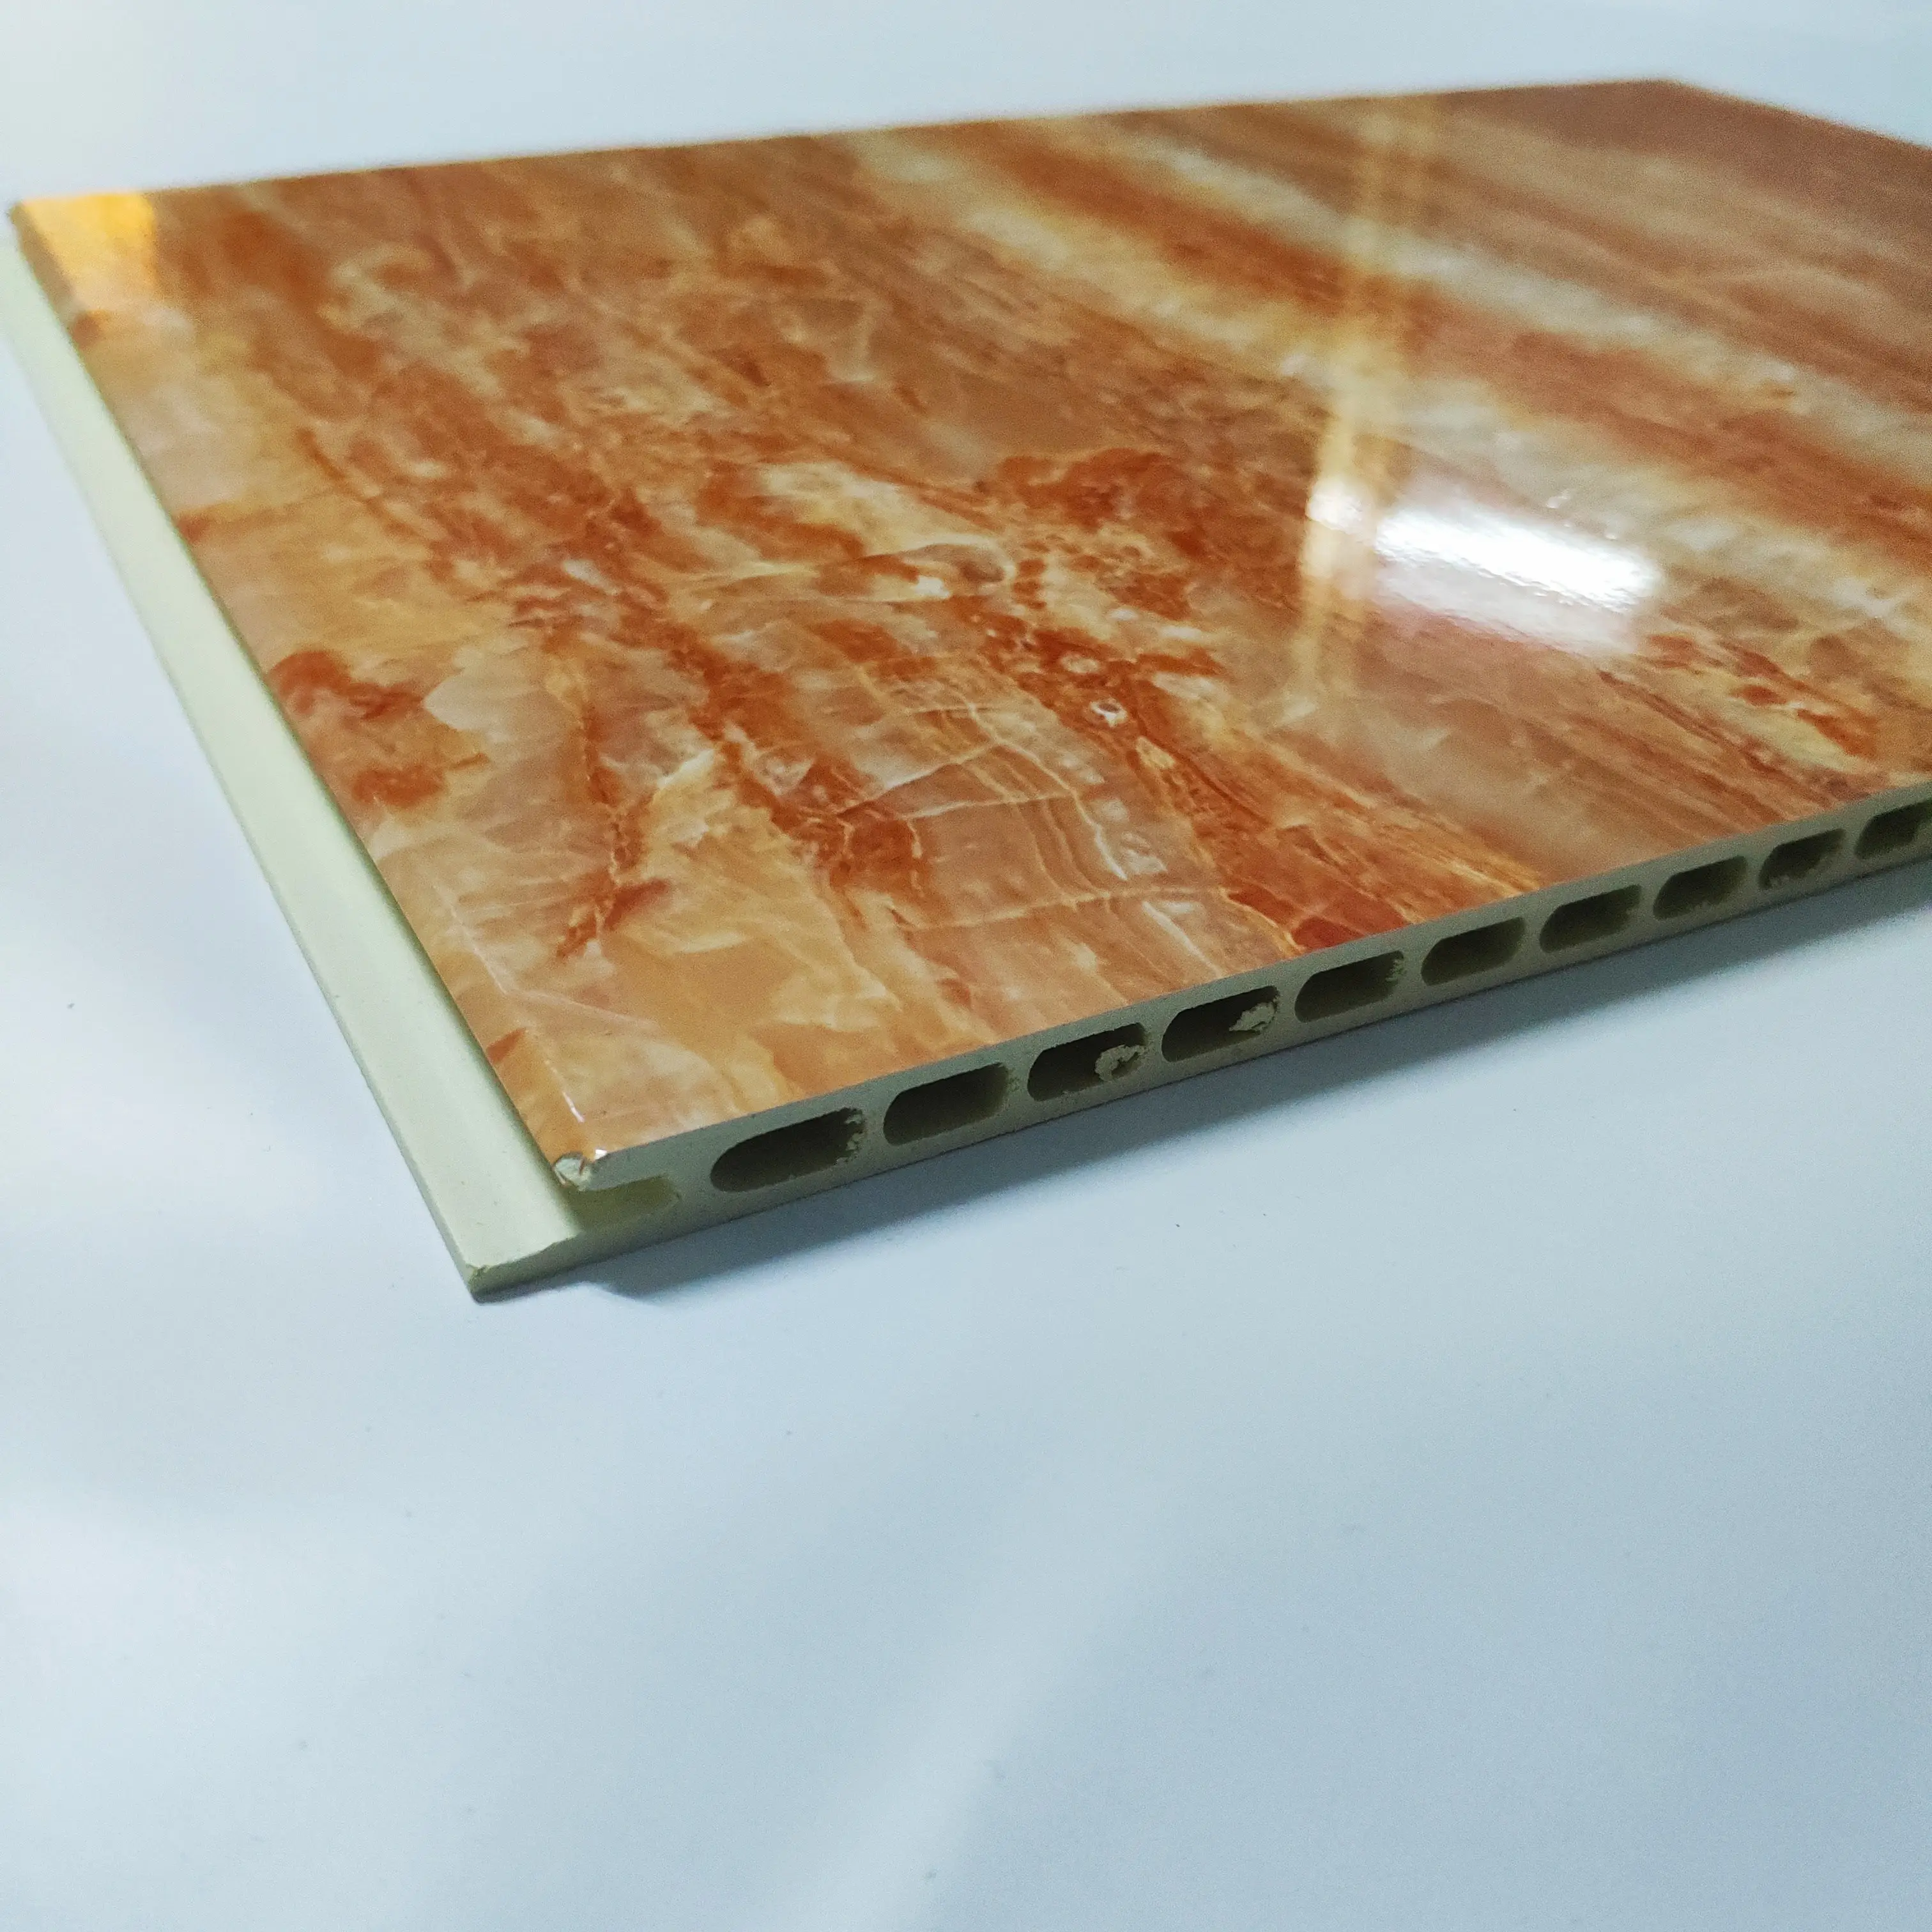 CE Standar 300 Mm Marmer Marmer Waterproof WPC Plastik Dekorasi Interior Wall Panel Dinding Yang Ktv Dekorasi